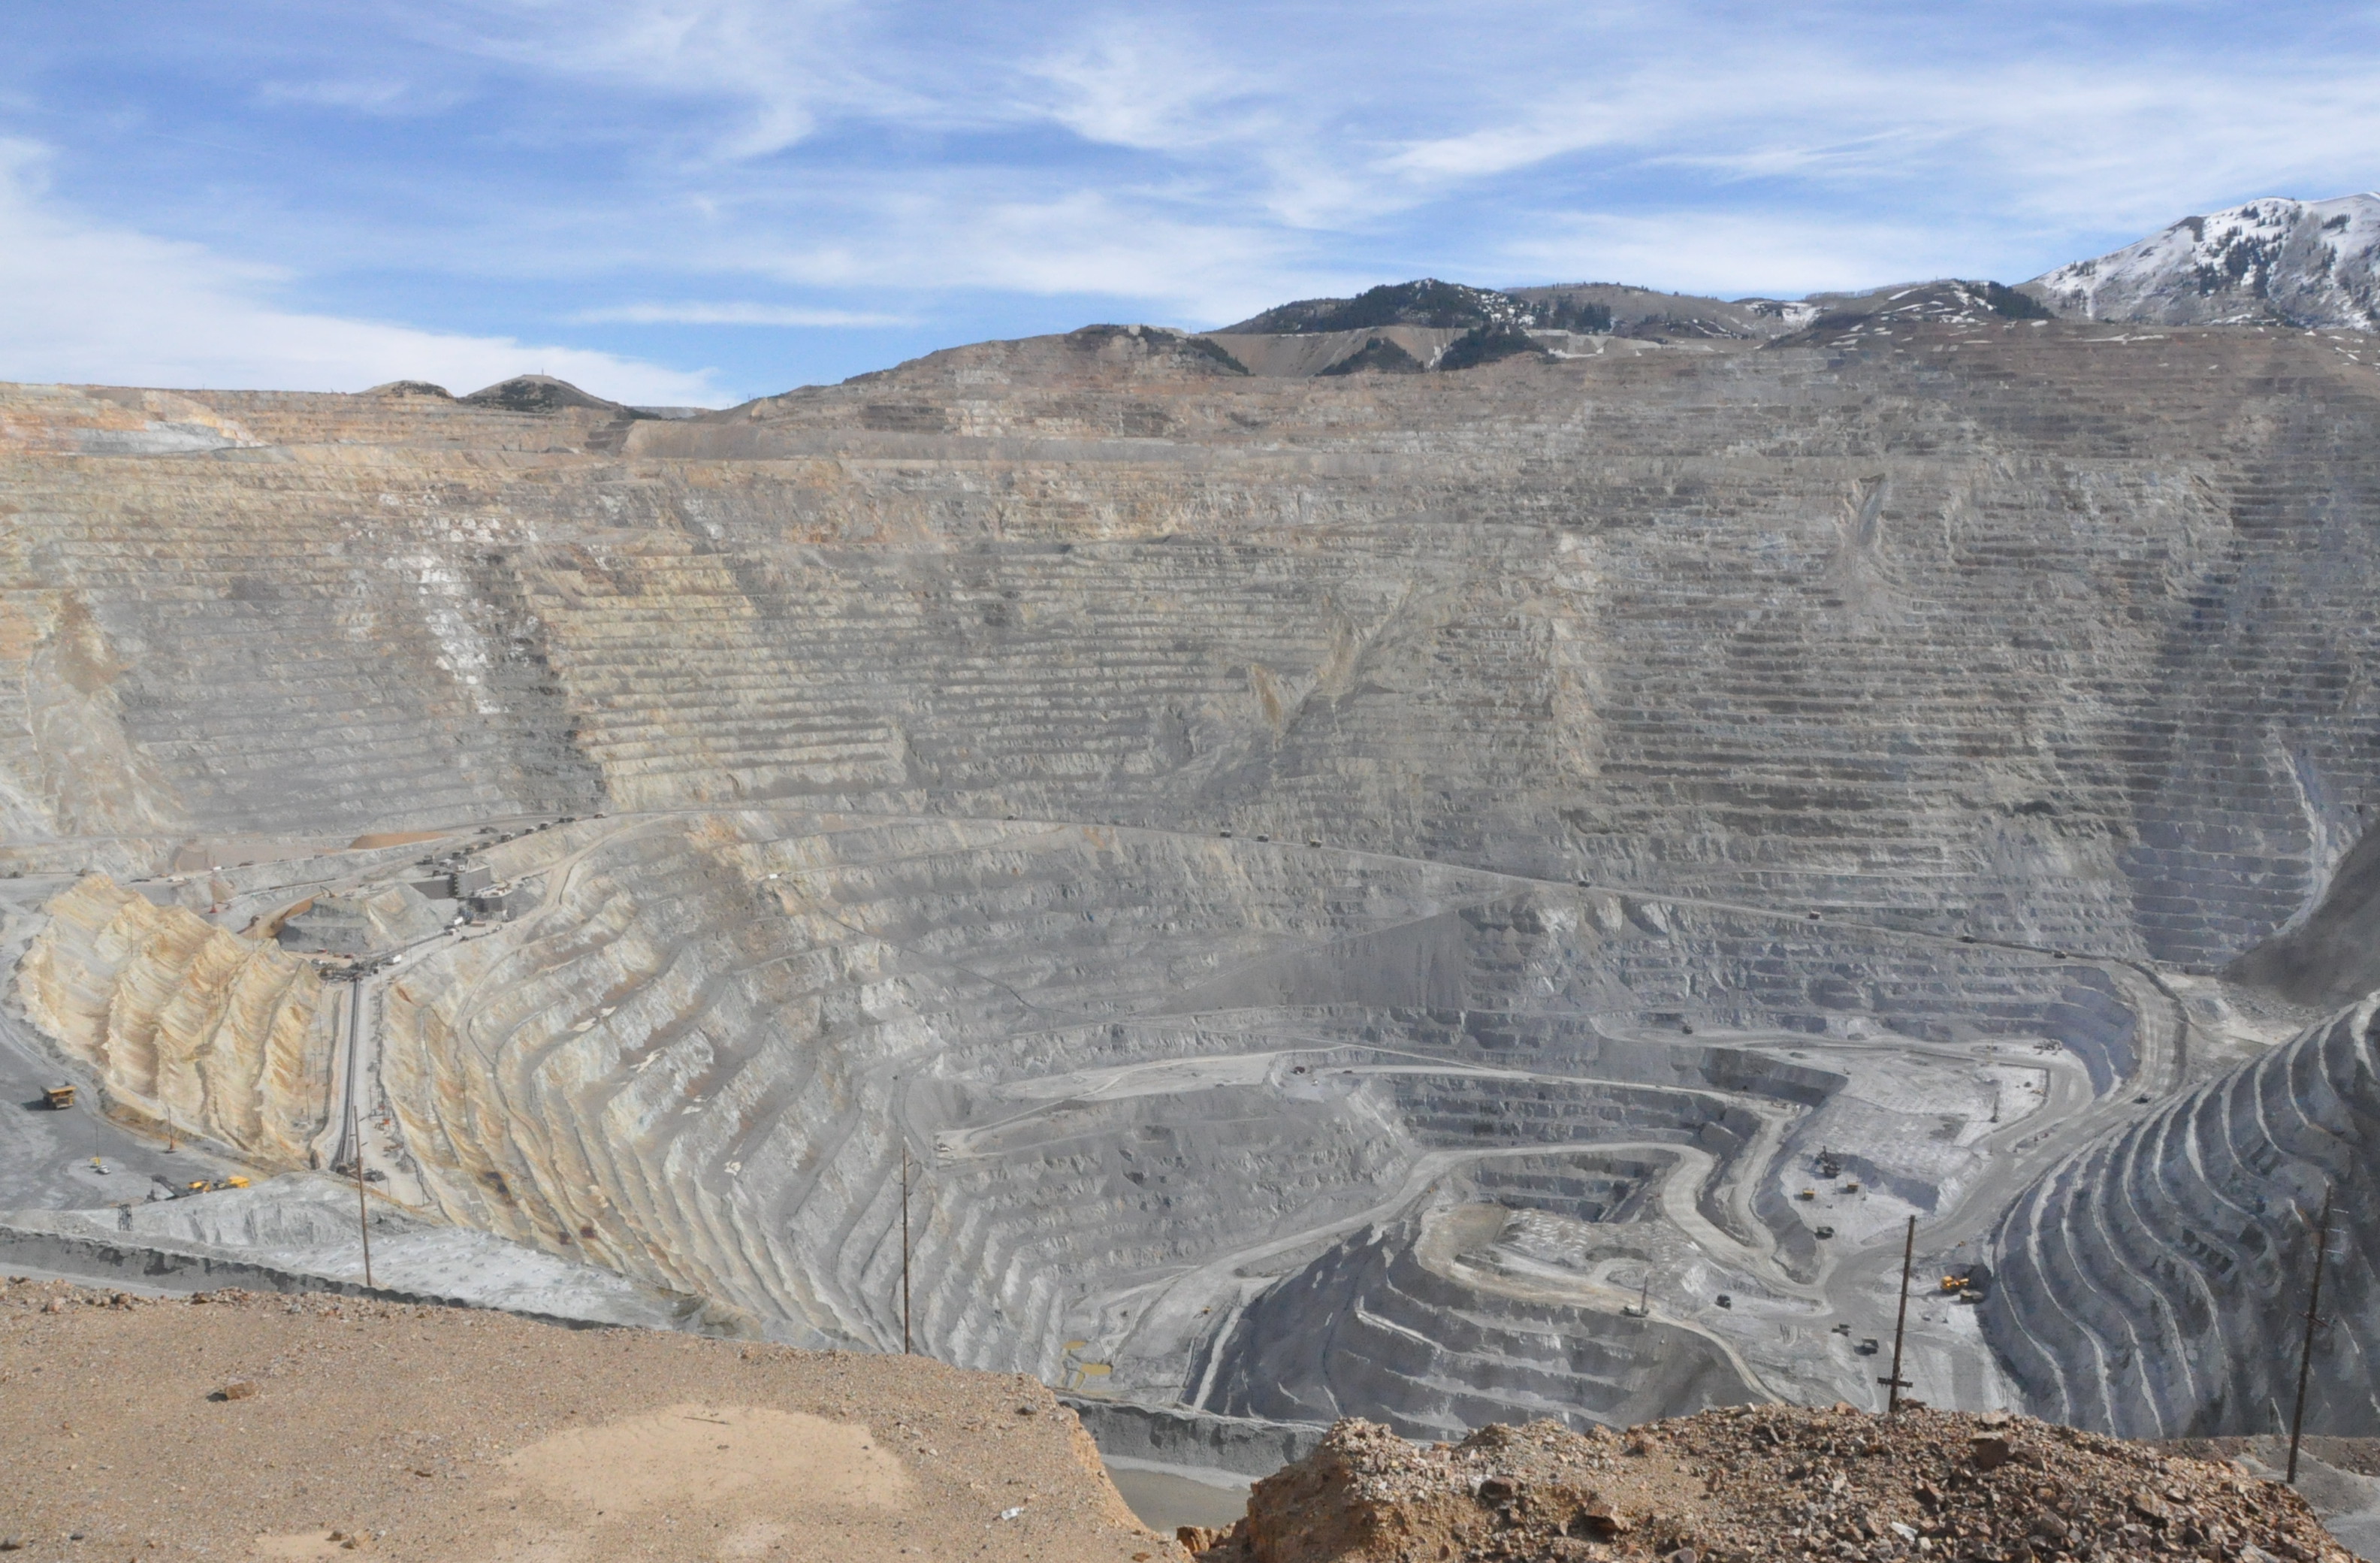 67全球最大露天矿井:堪比4个摩纳哥,黄金产量超189国黄金储备